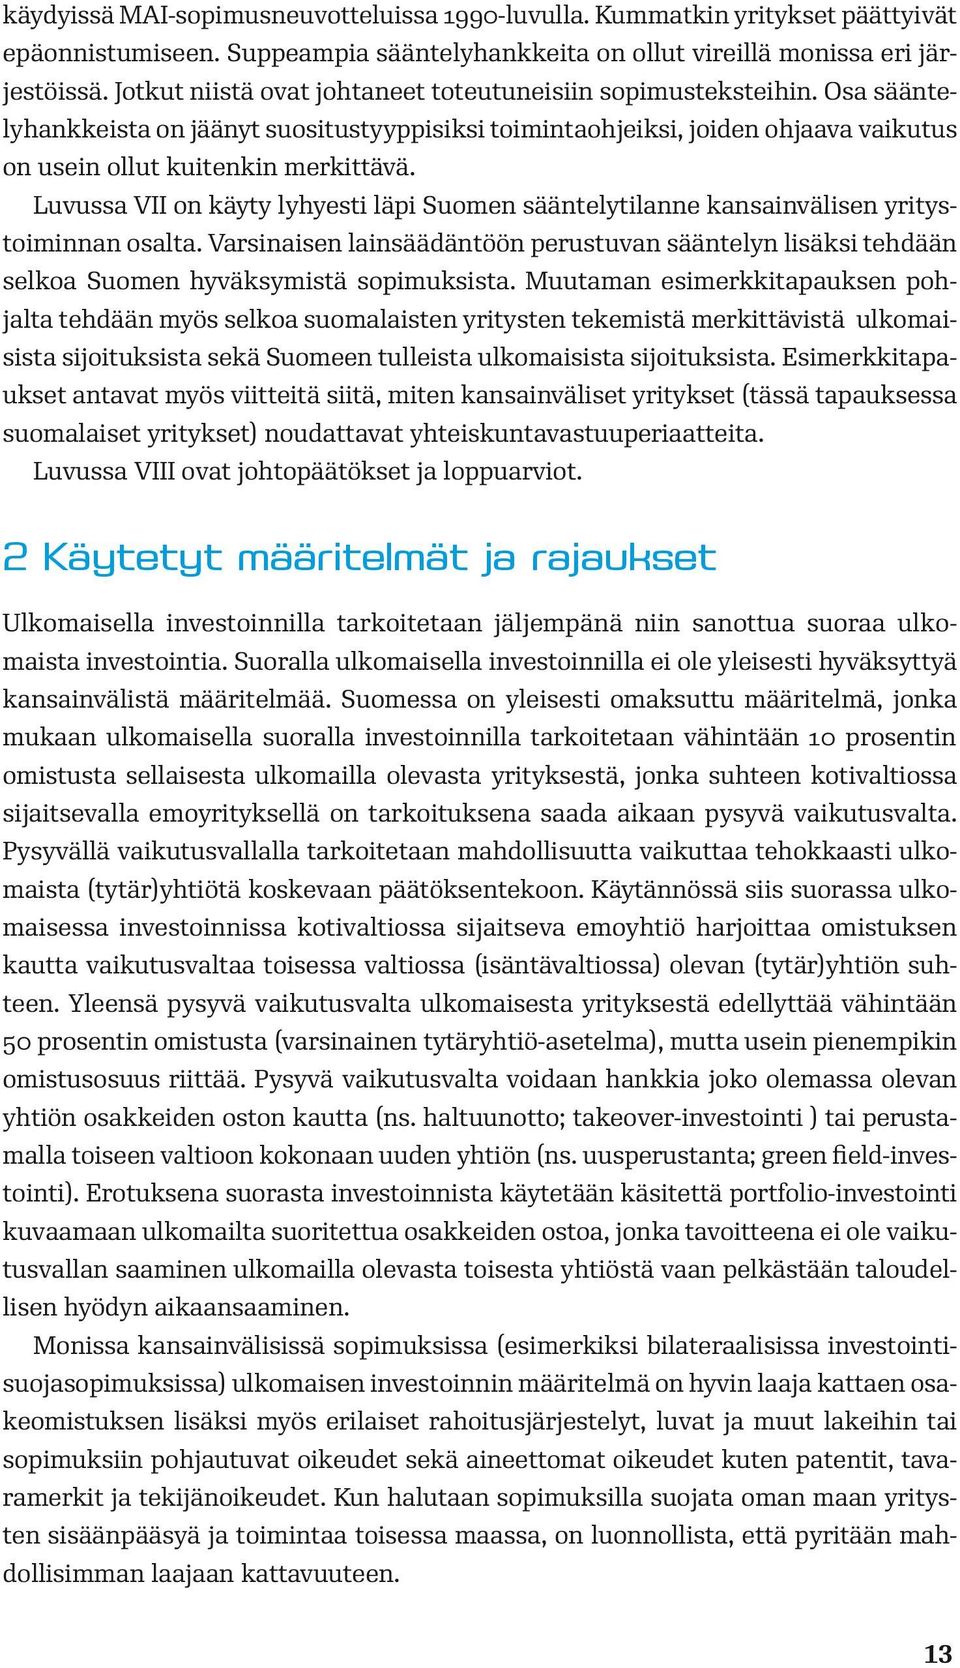 Luvussa VII on käyty lyhyesti läpi Suomen sääntelytilanne kansainvälisen yritystoiminnan osalta.